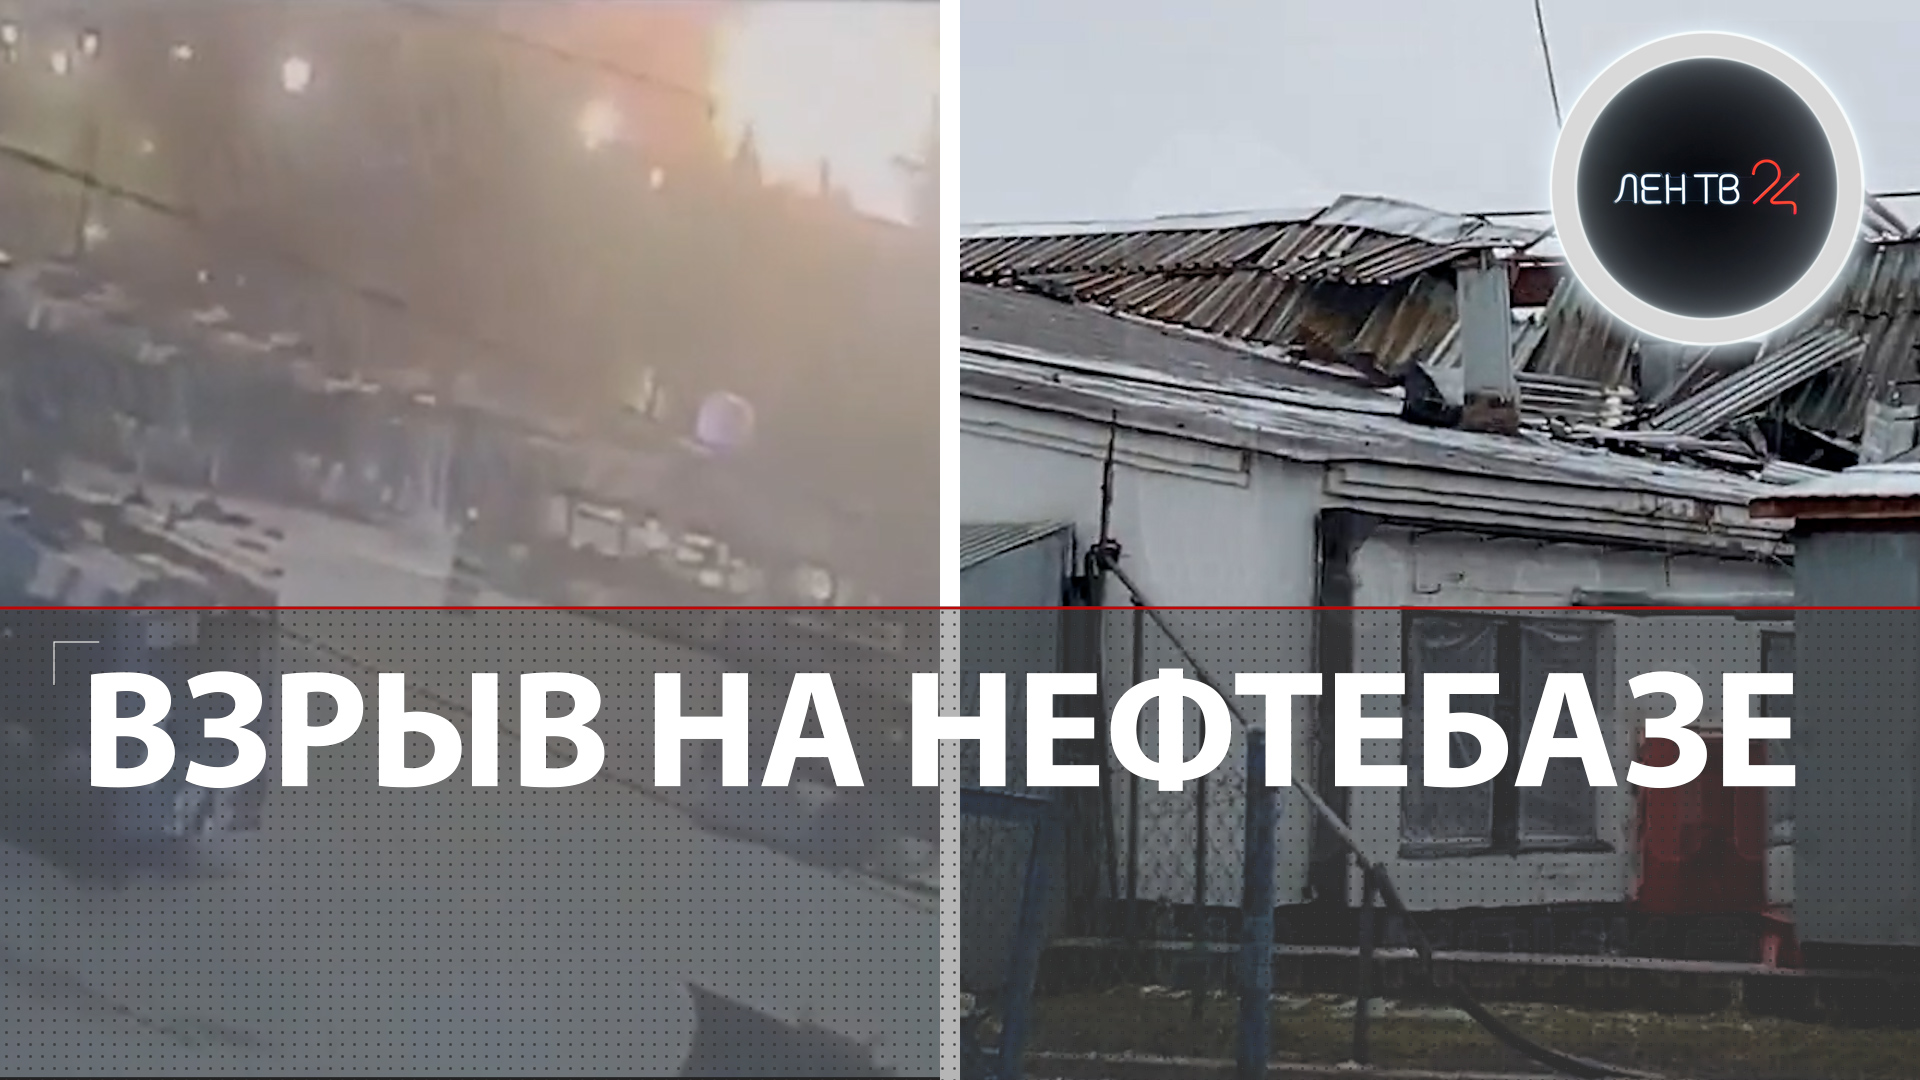 ЧП на "Невском мазуте" | Обломки БПЛА на нефтебазе | Взрыв слышали в нескольких районах Петербурга